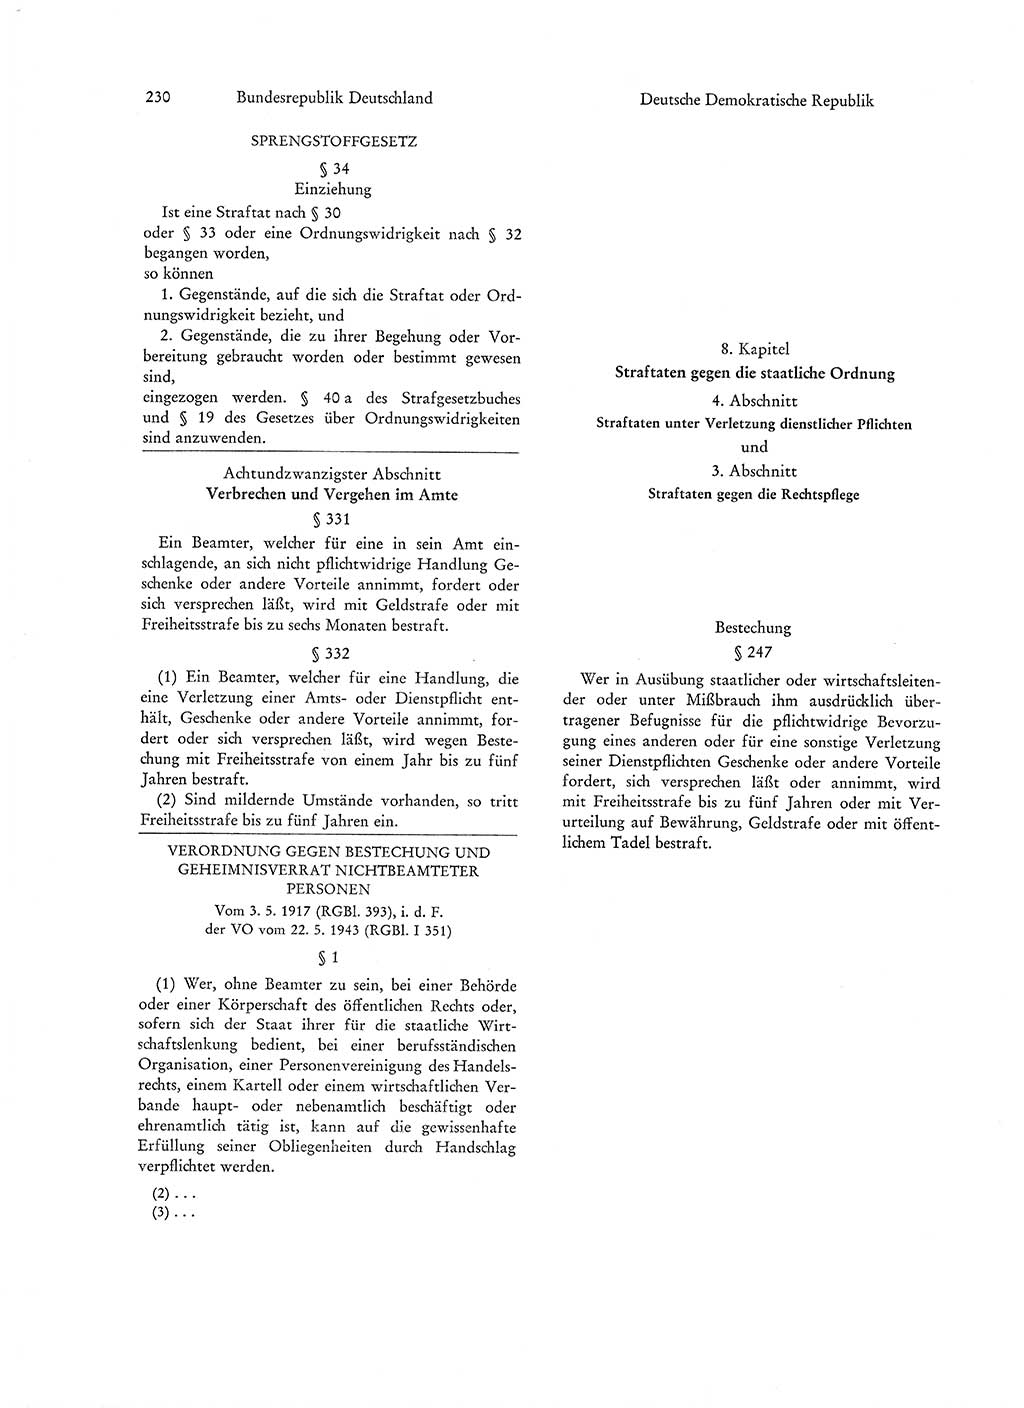 Strafgesetzgebung in Deutschland [Bundesrepublik Deutschland (BRD) und Deutsche Demokratische Republik (DDR)] 1972, Seite 230 (Str.-Ges. Dtl. StGB BRD DDR 1972, S. 230)